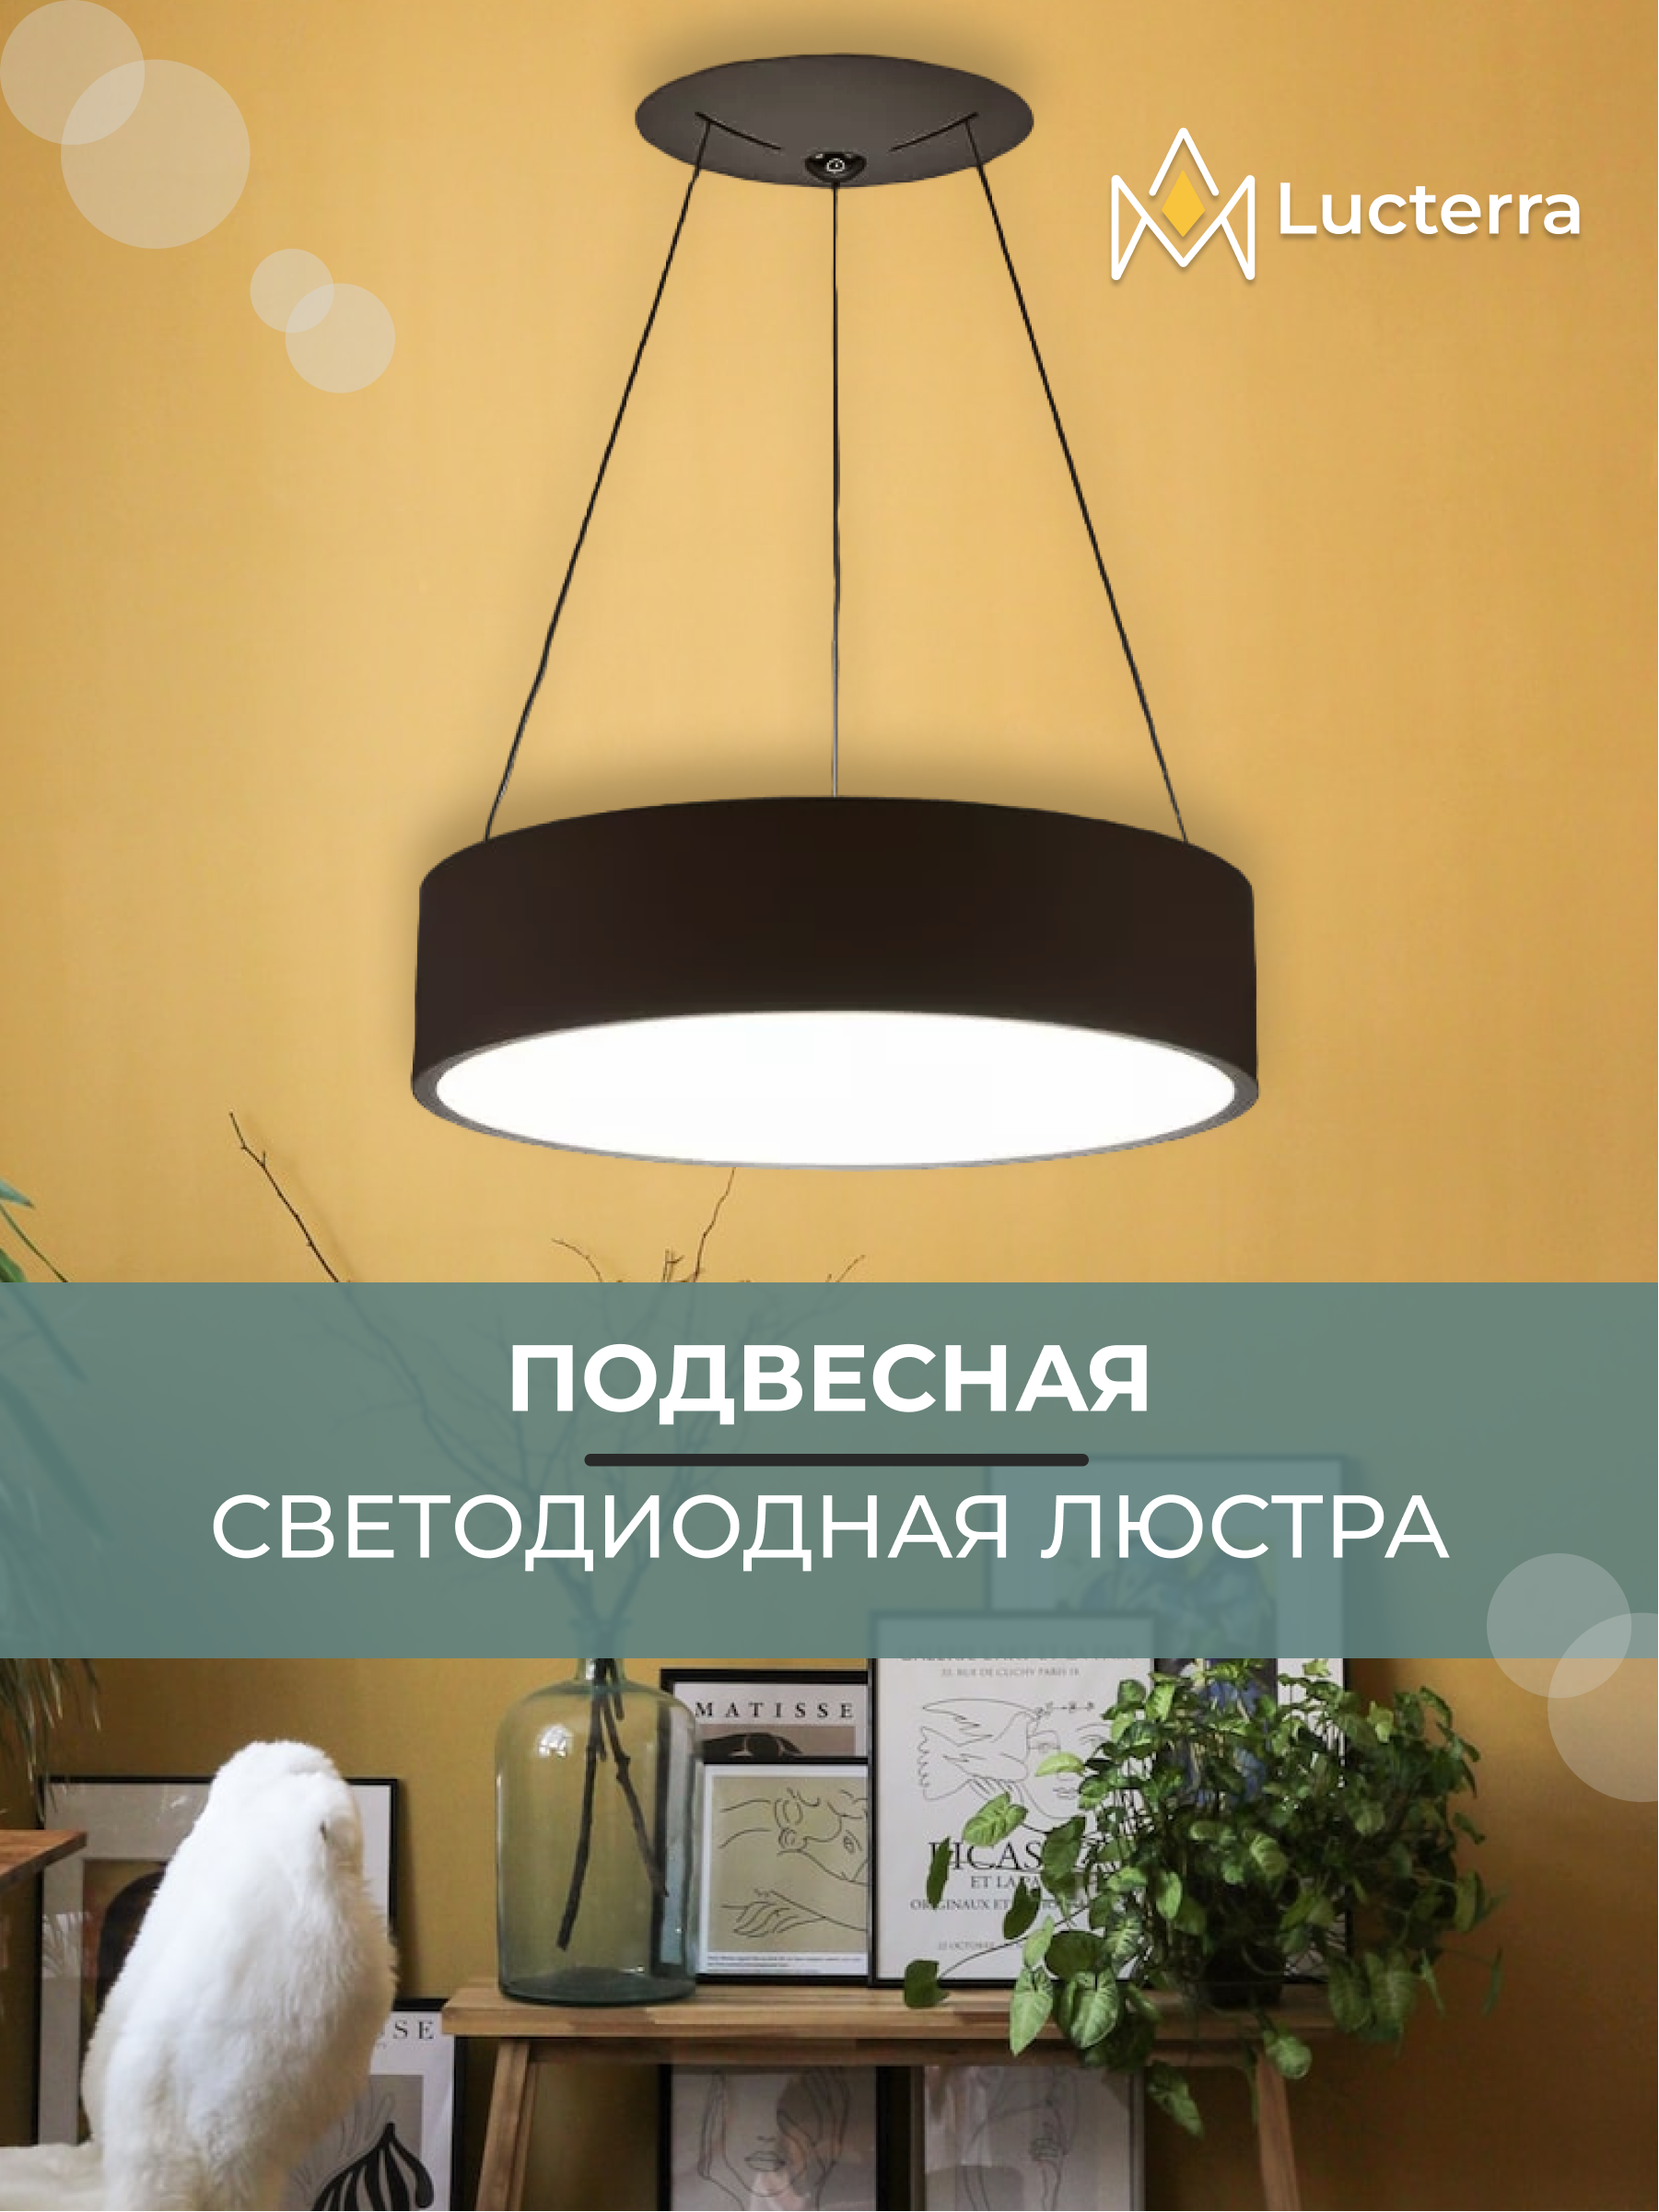 Купить освещение для спальни в интернет магазине luchistii-sudak.ru | Страница 30